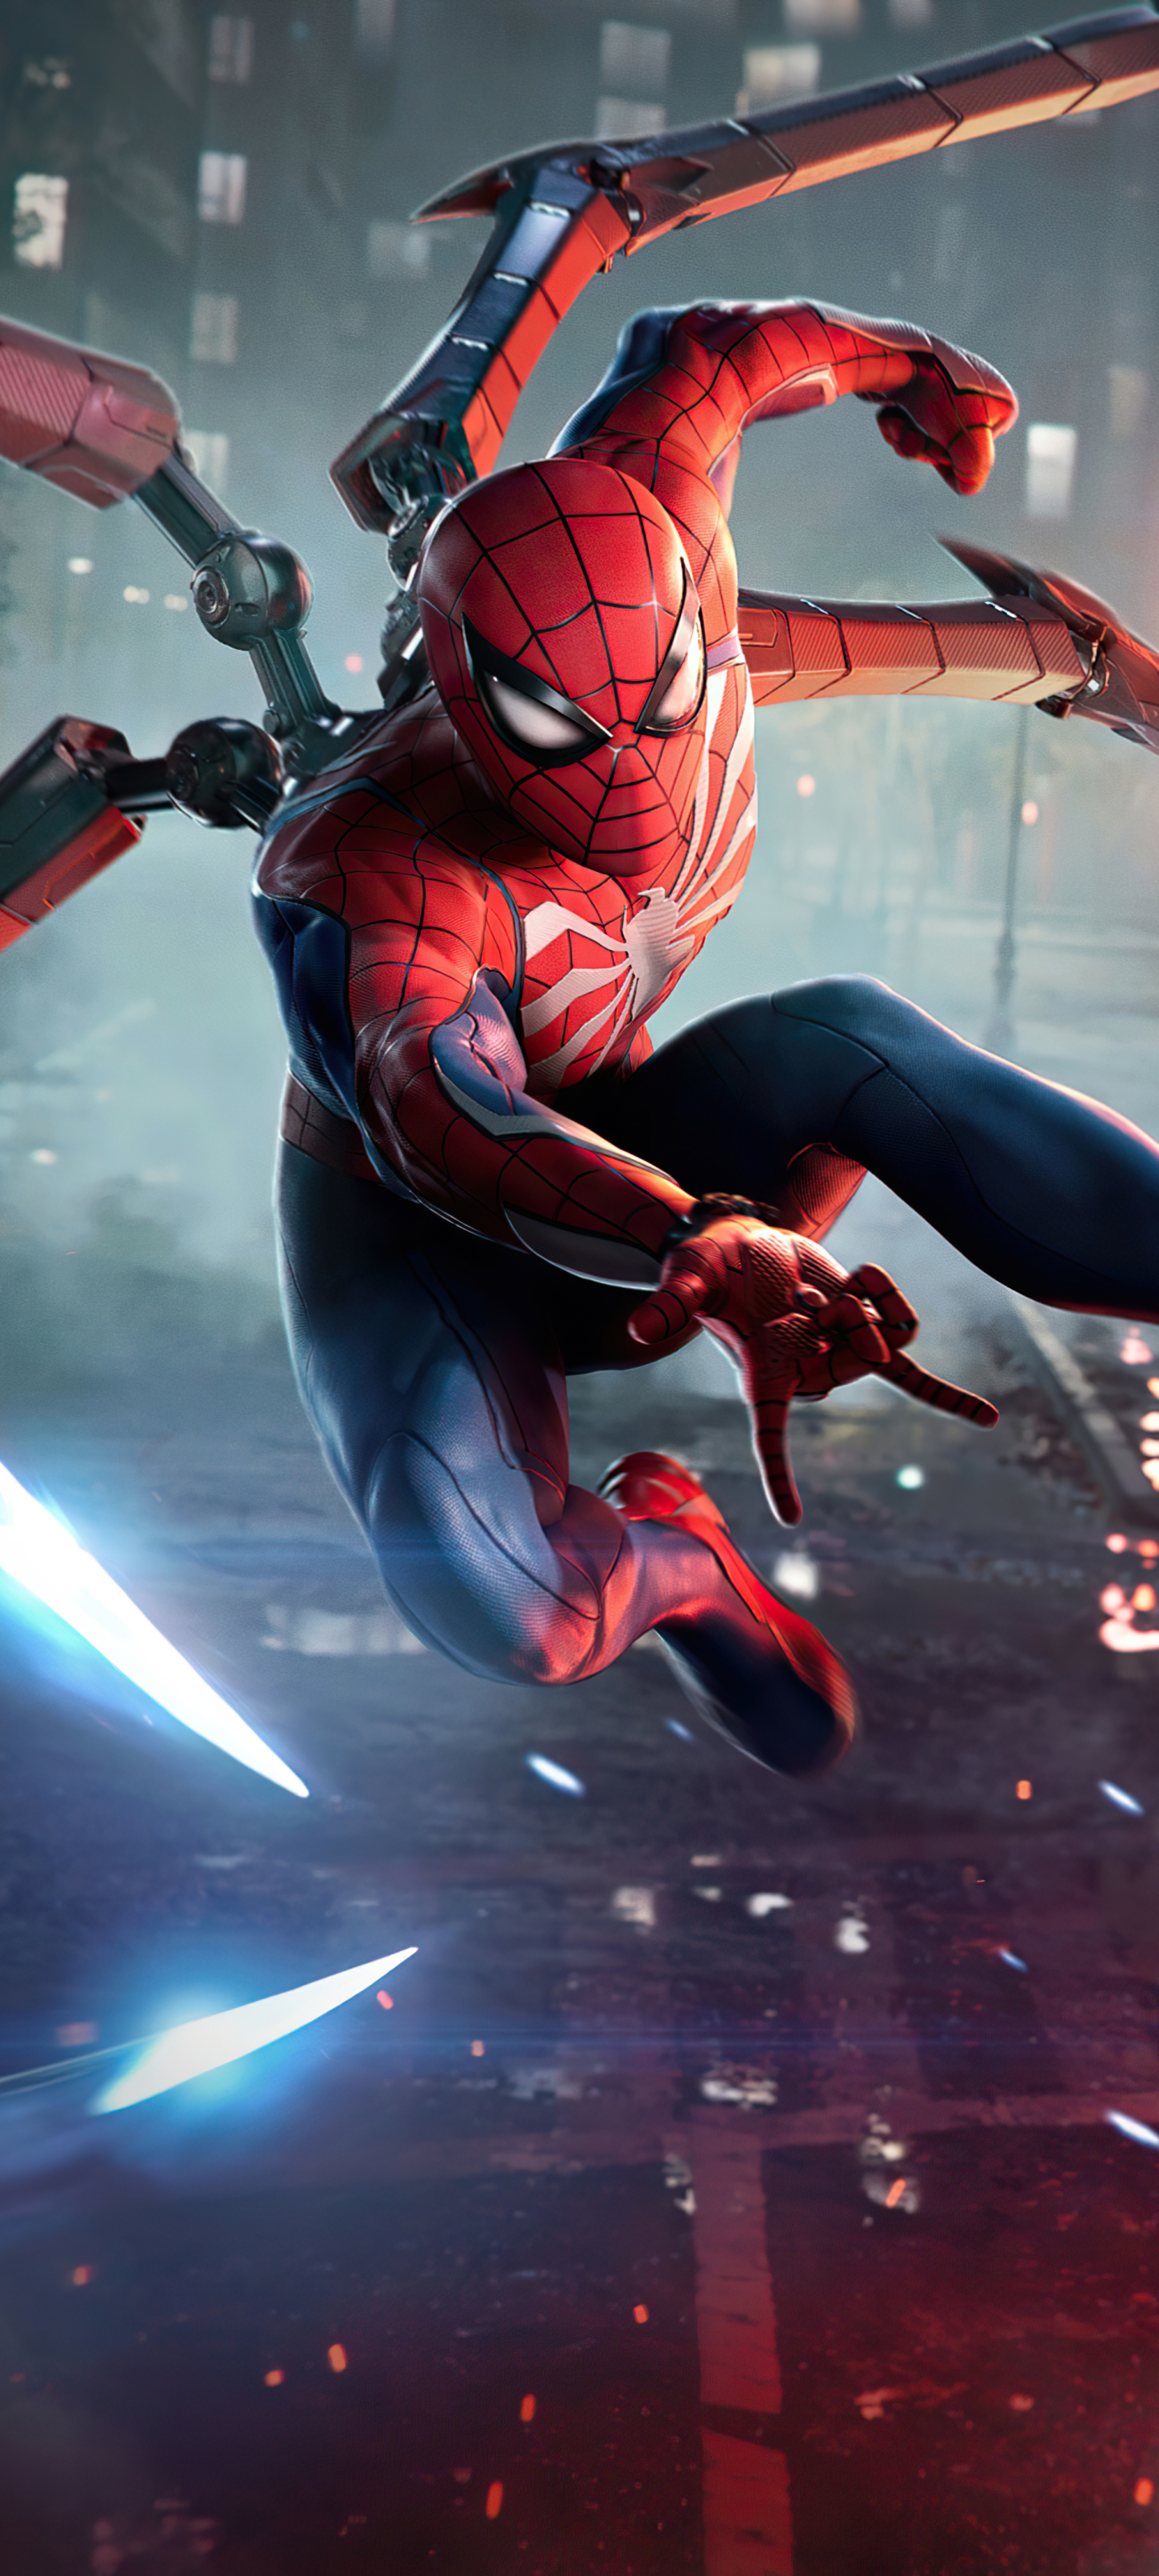 marvel's spider man 2, video game, spider man